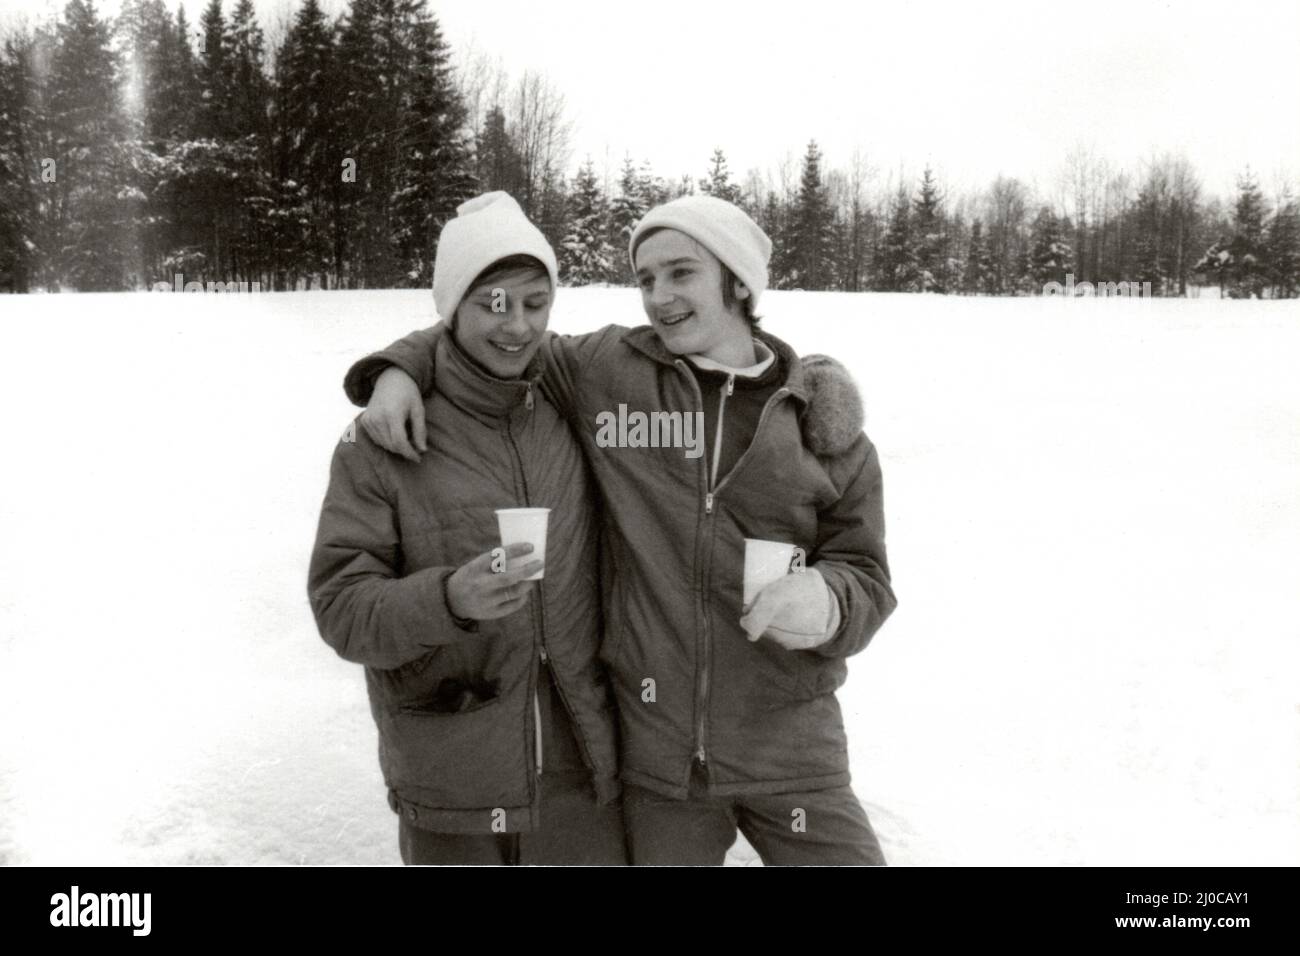 Auténtica fotografía vintage de dos sonrientes chicos adolescentes felices bebiendo de vasos de plástico de pie en la nieve cerca del bosque, Suecia, concepto de felicidad Foto de stock